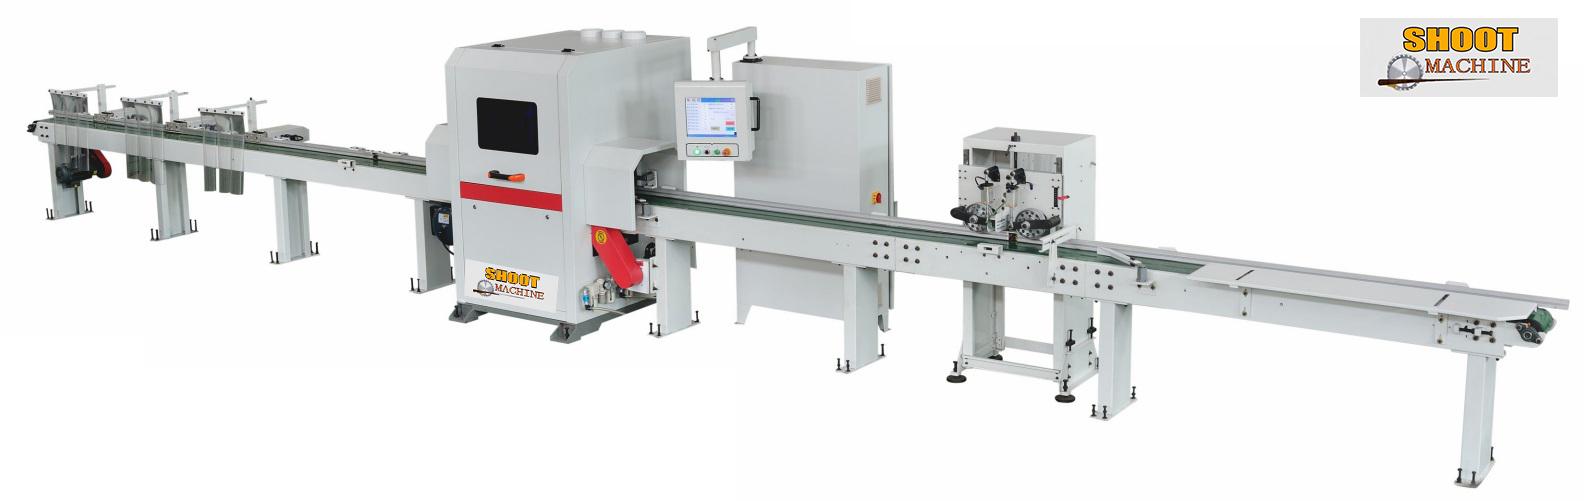 CNC Optimization Saw Machine,cutt of machine,SH-S200A